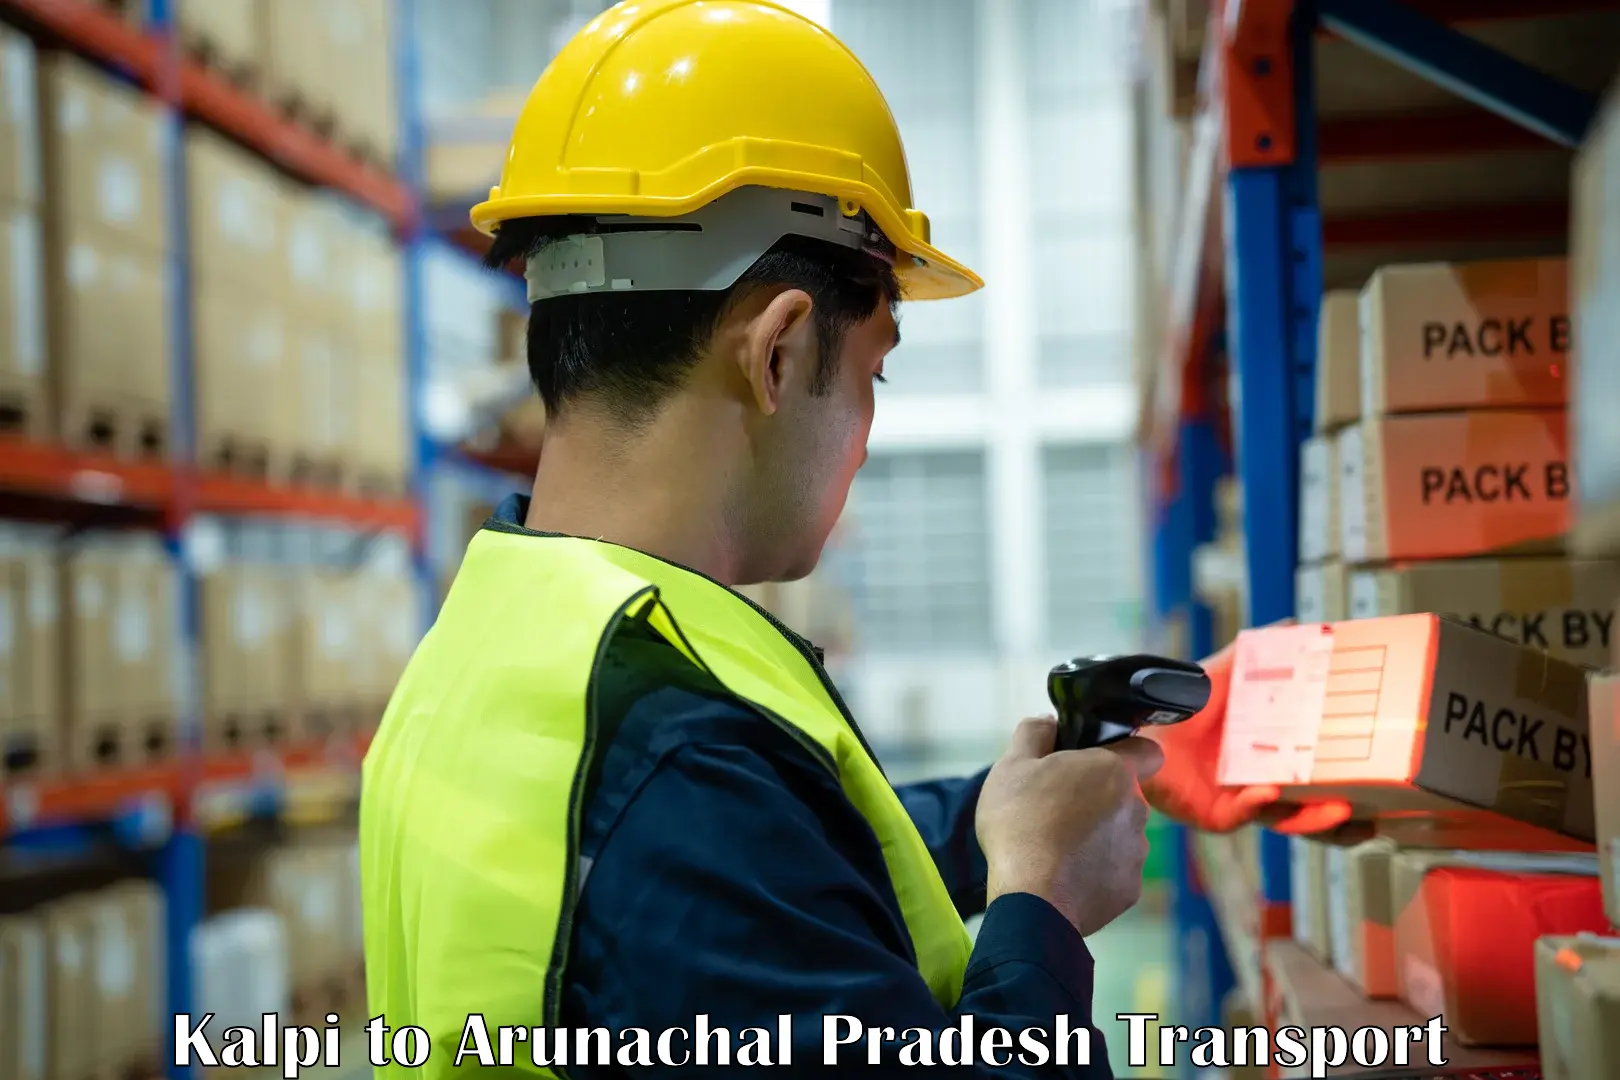 Container transportation services in Kalpi to Arunachal Pradesh